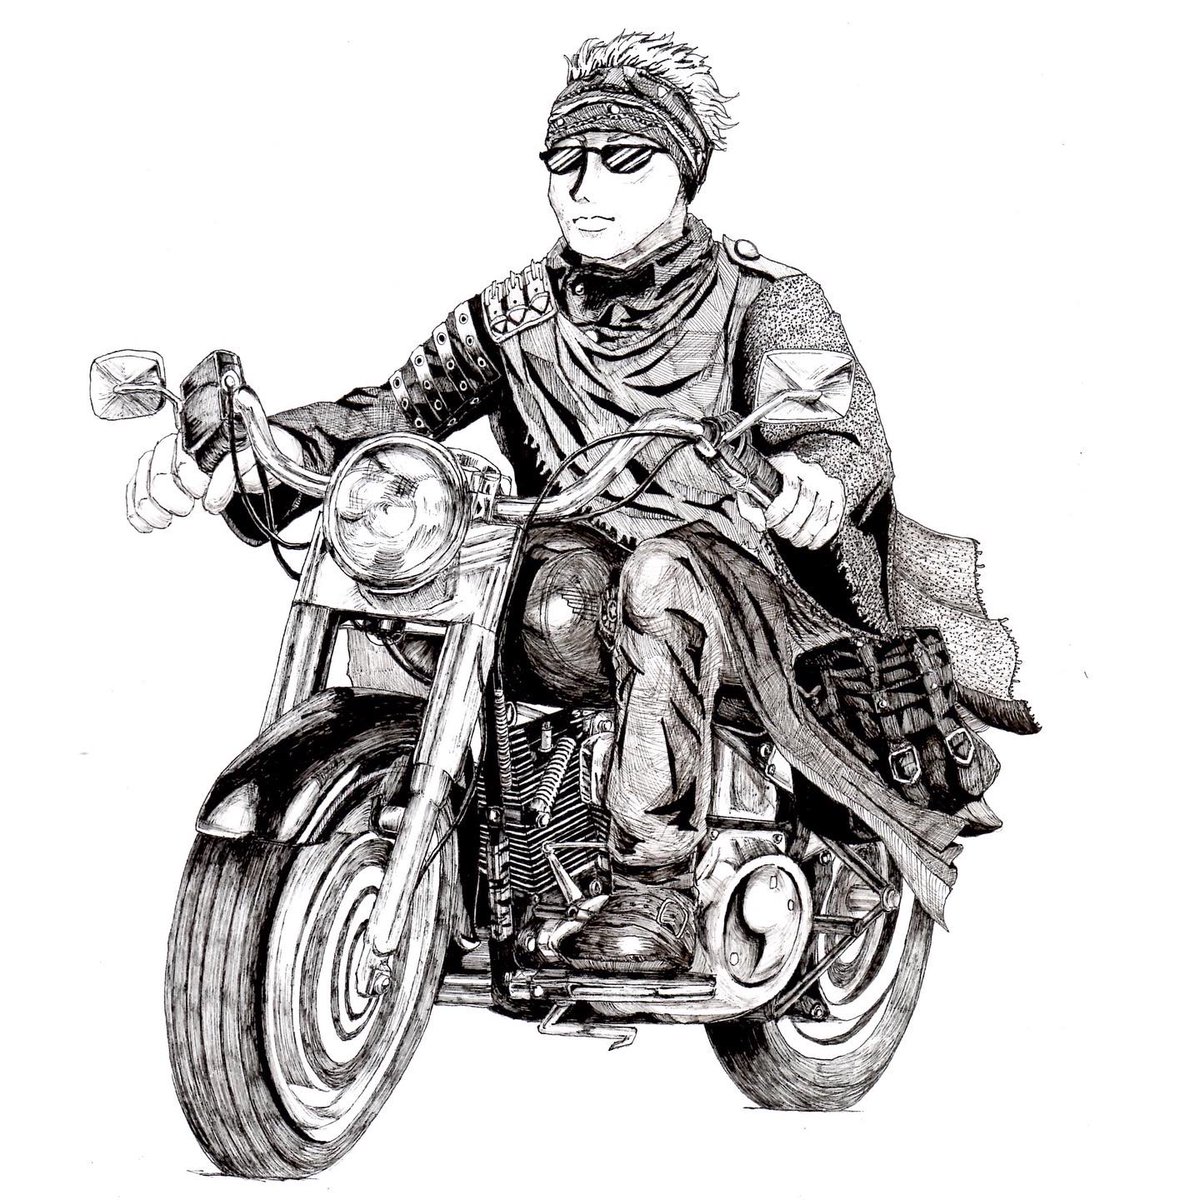 やまじあさこ Pe Twitter 今日は絵を書く時間がなかったので ちょっと前に書いた絵です ターミネーター2のハーレーを描いてみた イラスト イラストレーション ペン画 白黒画 バイク アメリカンバイク ハーレーダビッドソン ファットボーイ ターミネーター